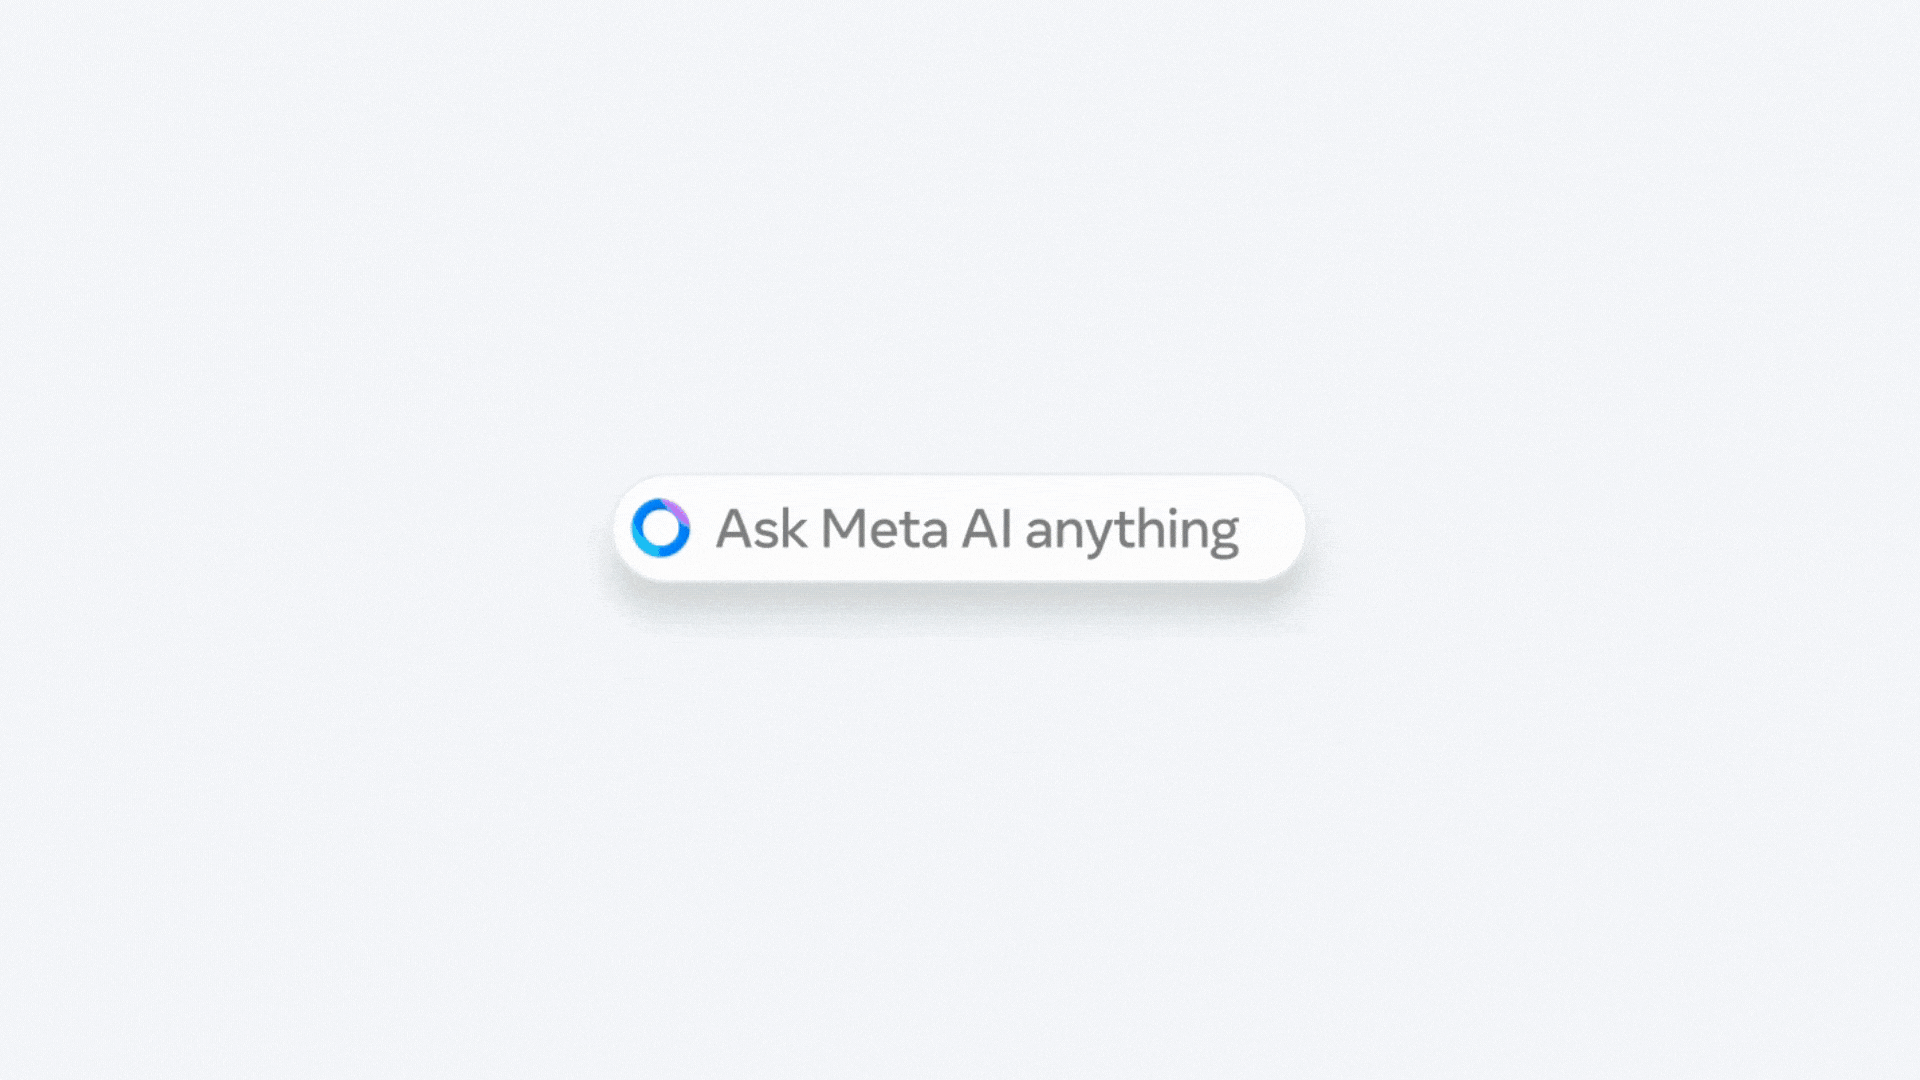 Novo Chatbot de IA avançado da Meta